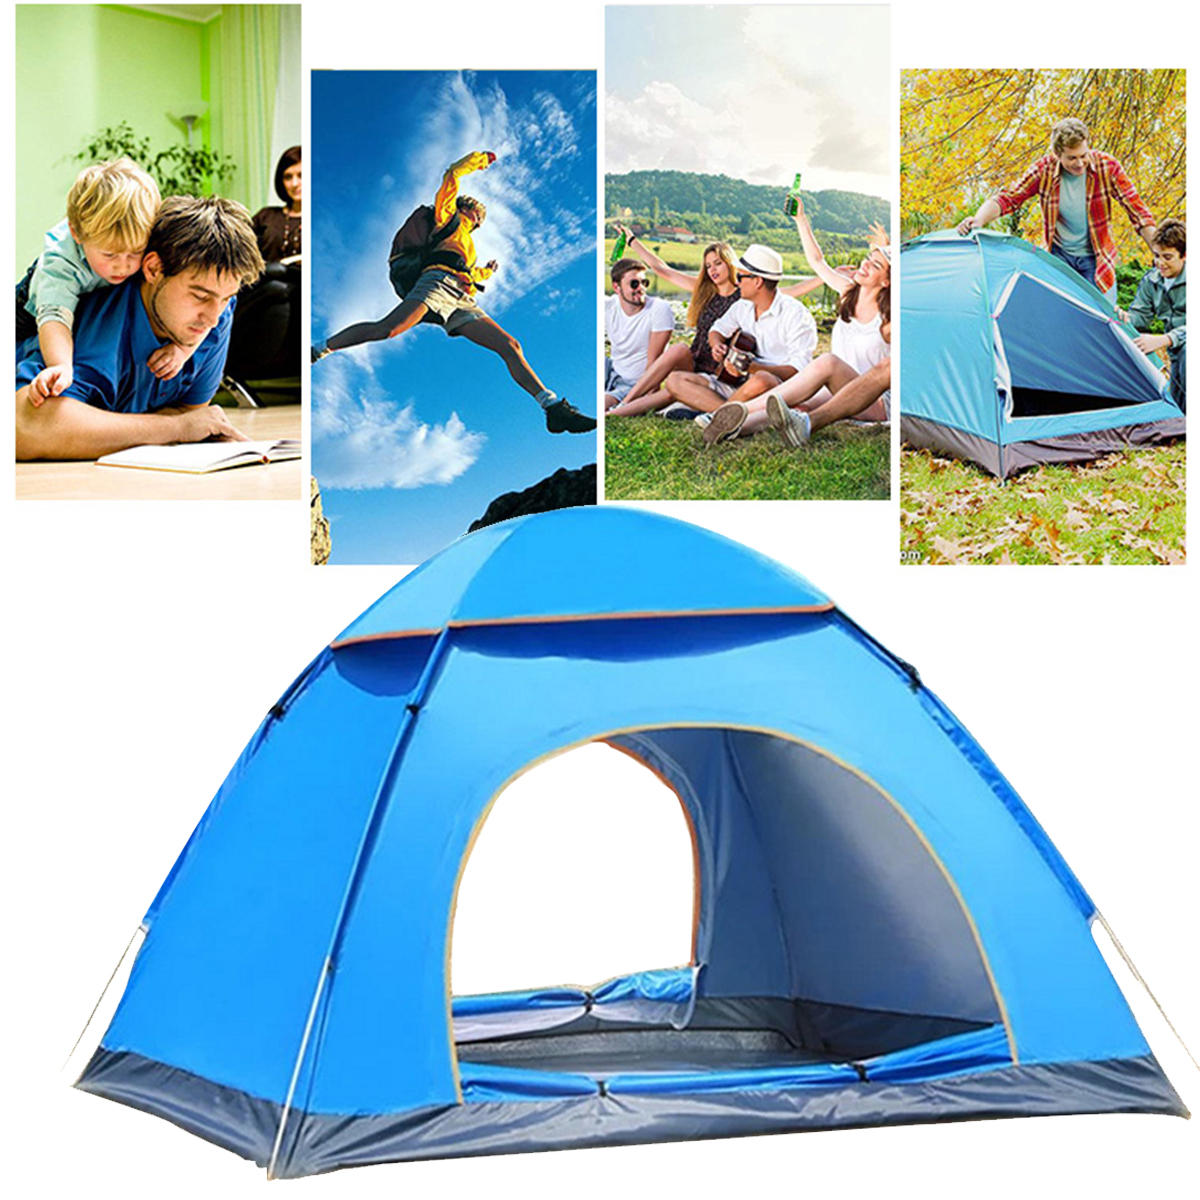 3-4 kişilik çift kapılı su geçirmez polyester plaj ve yürüyüş turları için uygun açık hava Dome kamp çadırı.